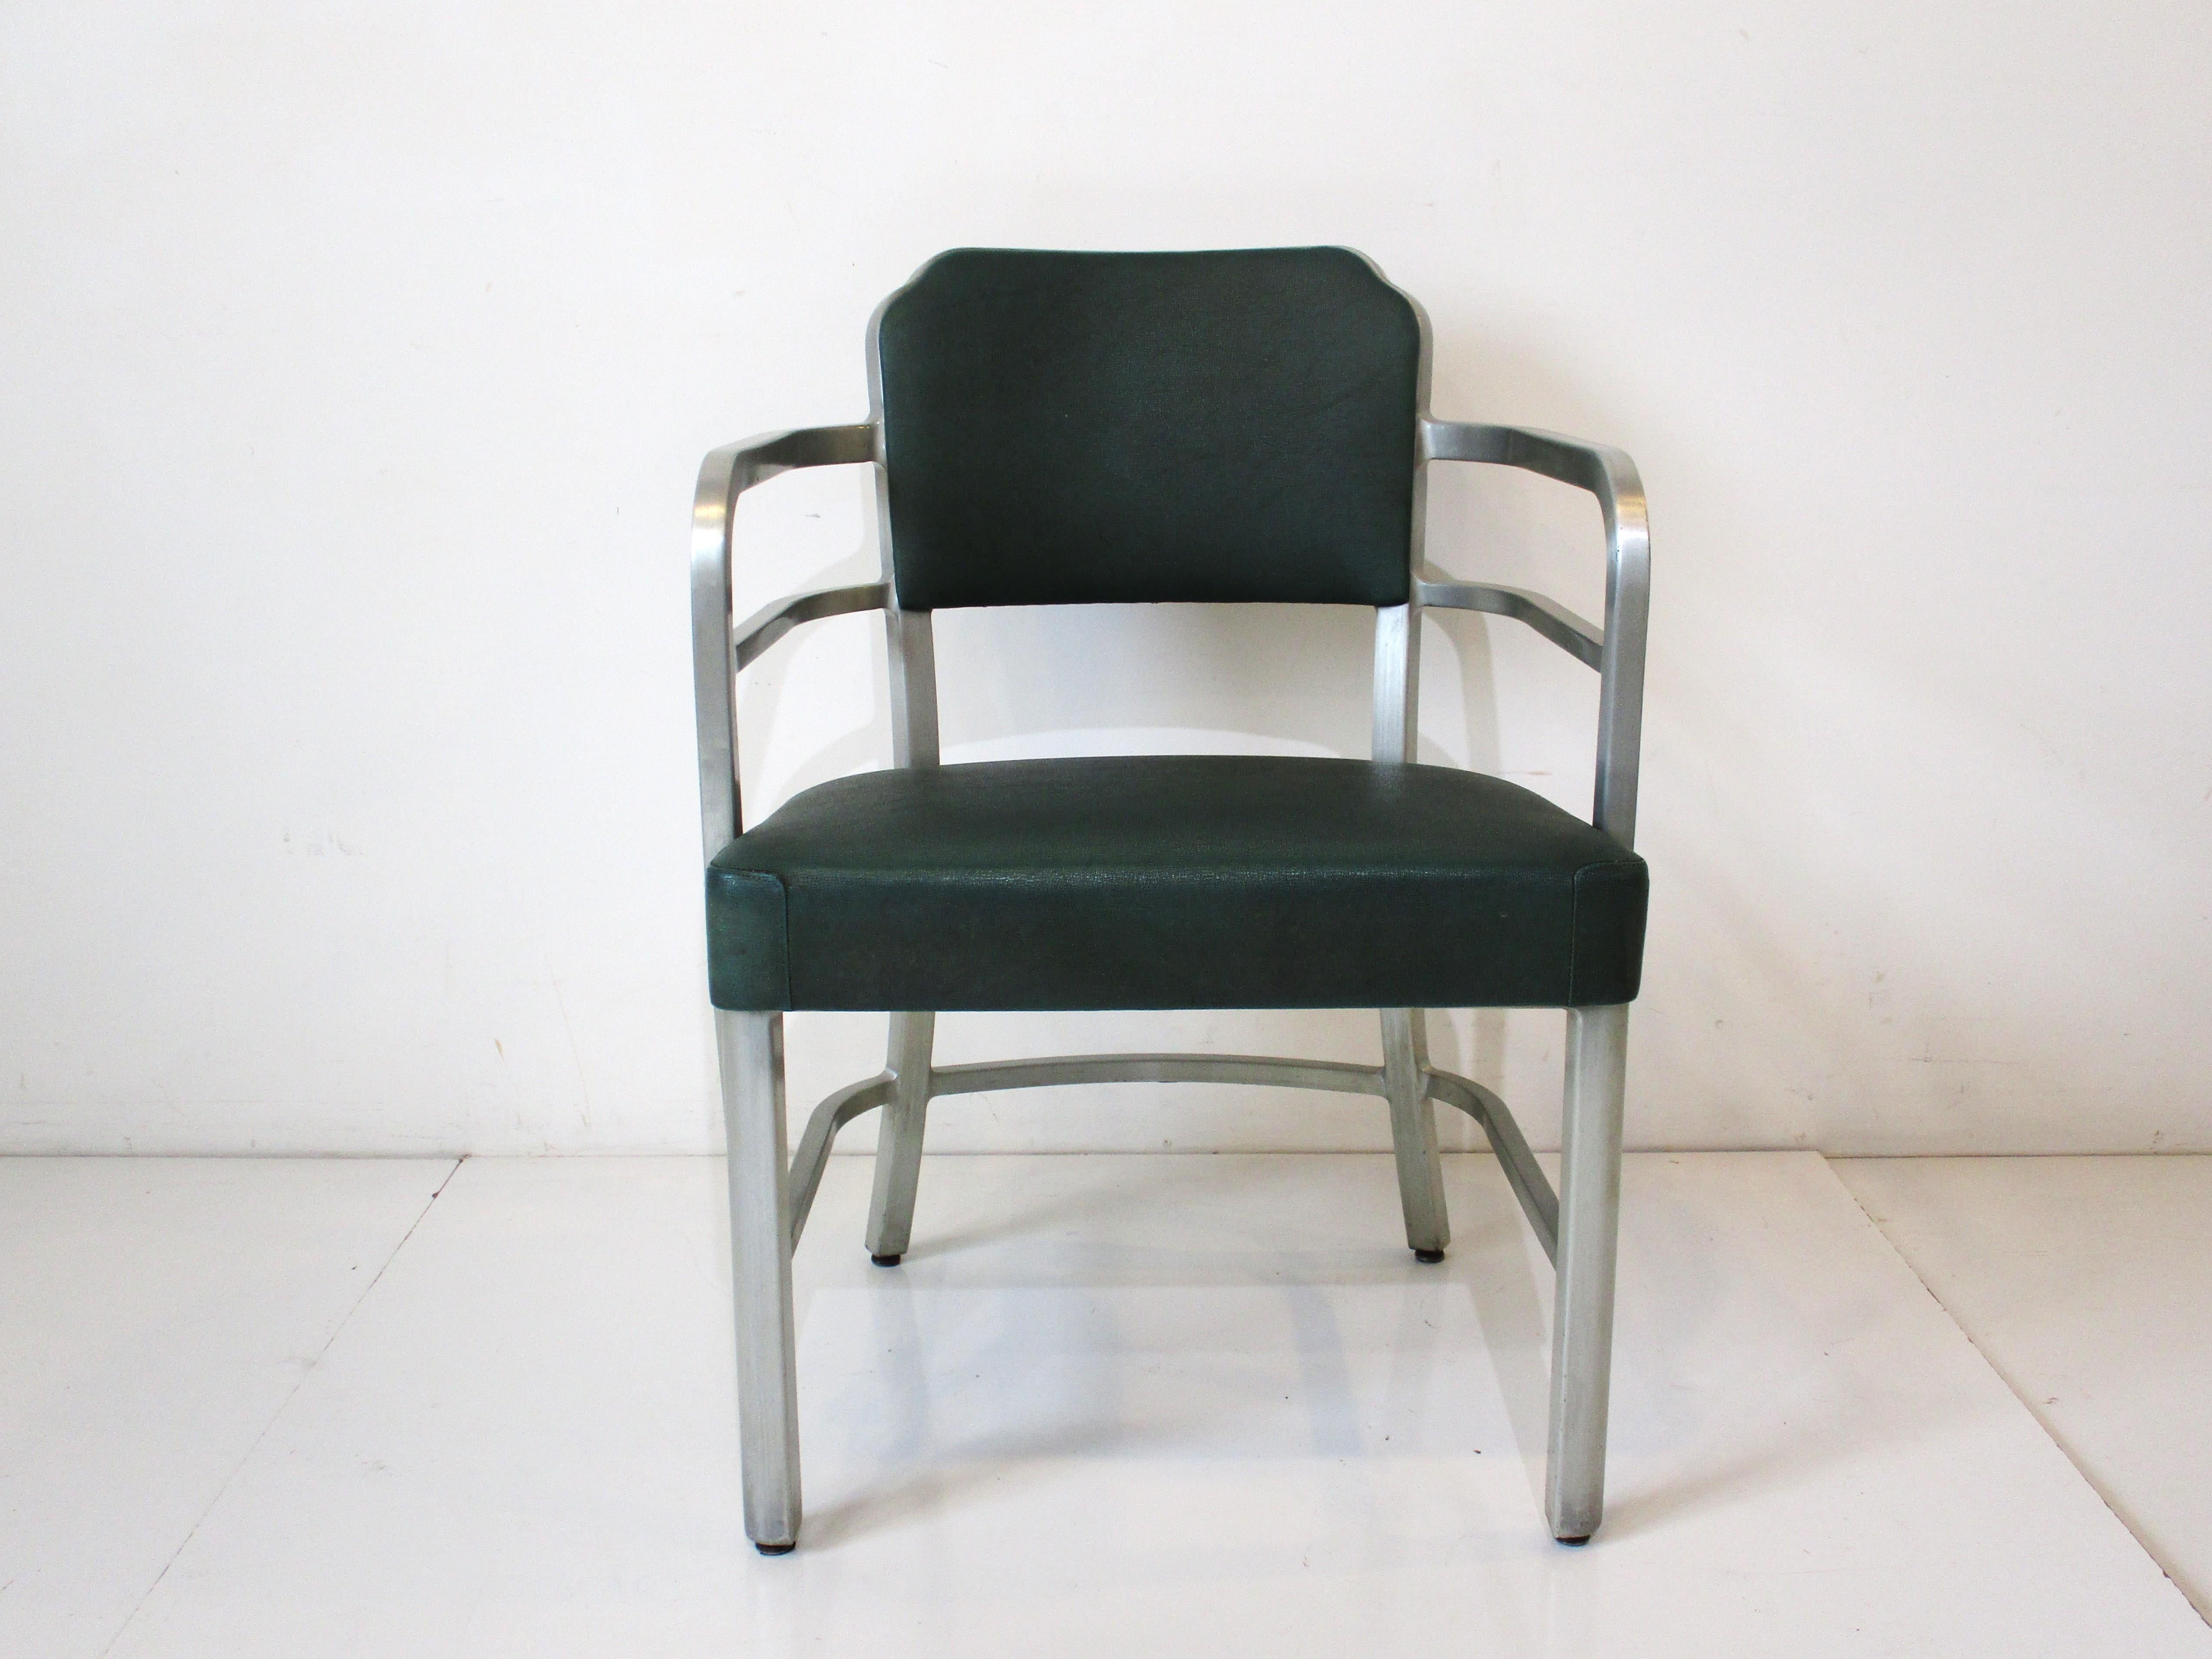 Ein Sessel mit Rahmen aus gebürstetem Aluminium, geschwungenen Armlehnen und gepolstertem Sitz und Rücken. Der Stoff ist ein strukturiertes, dunkelgrünes Kunstleder und stammt aus dem Friseursalon des Art-déco-Bahnhofs Union Terminal in Cincinnati.